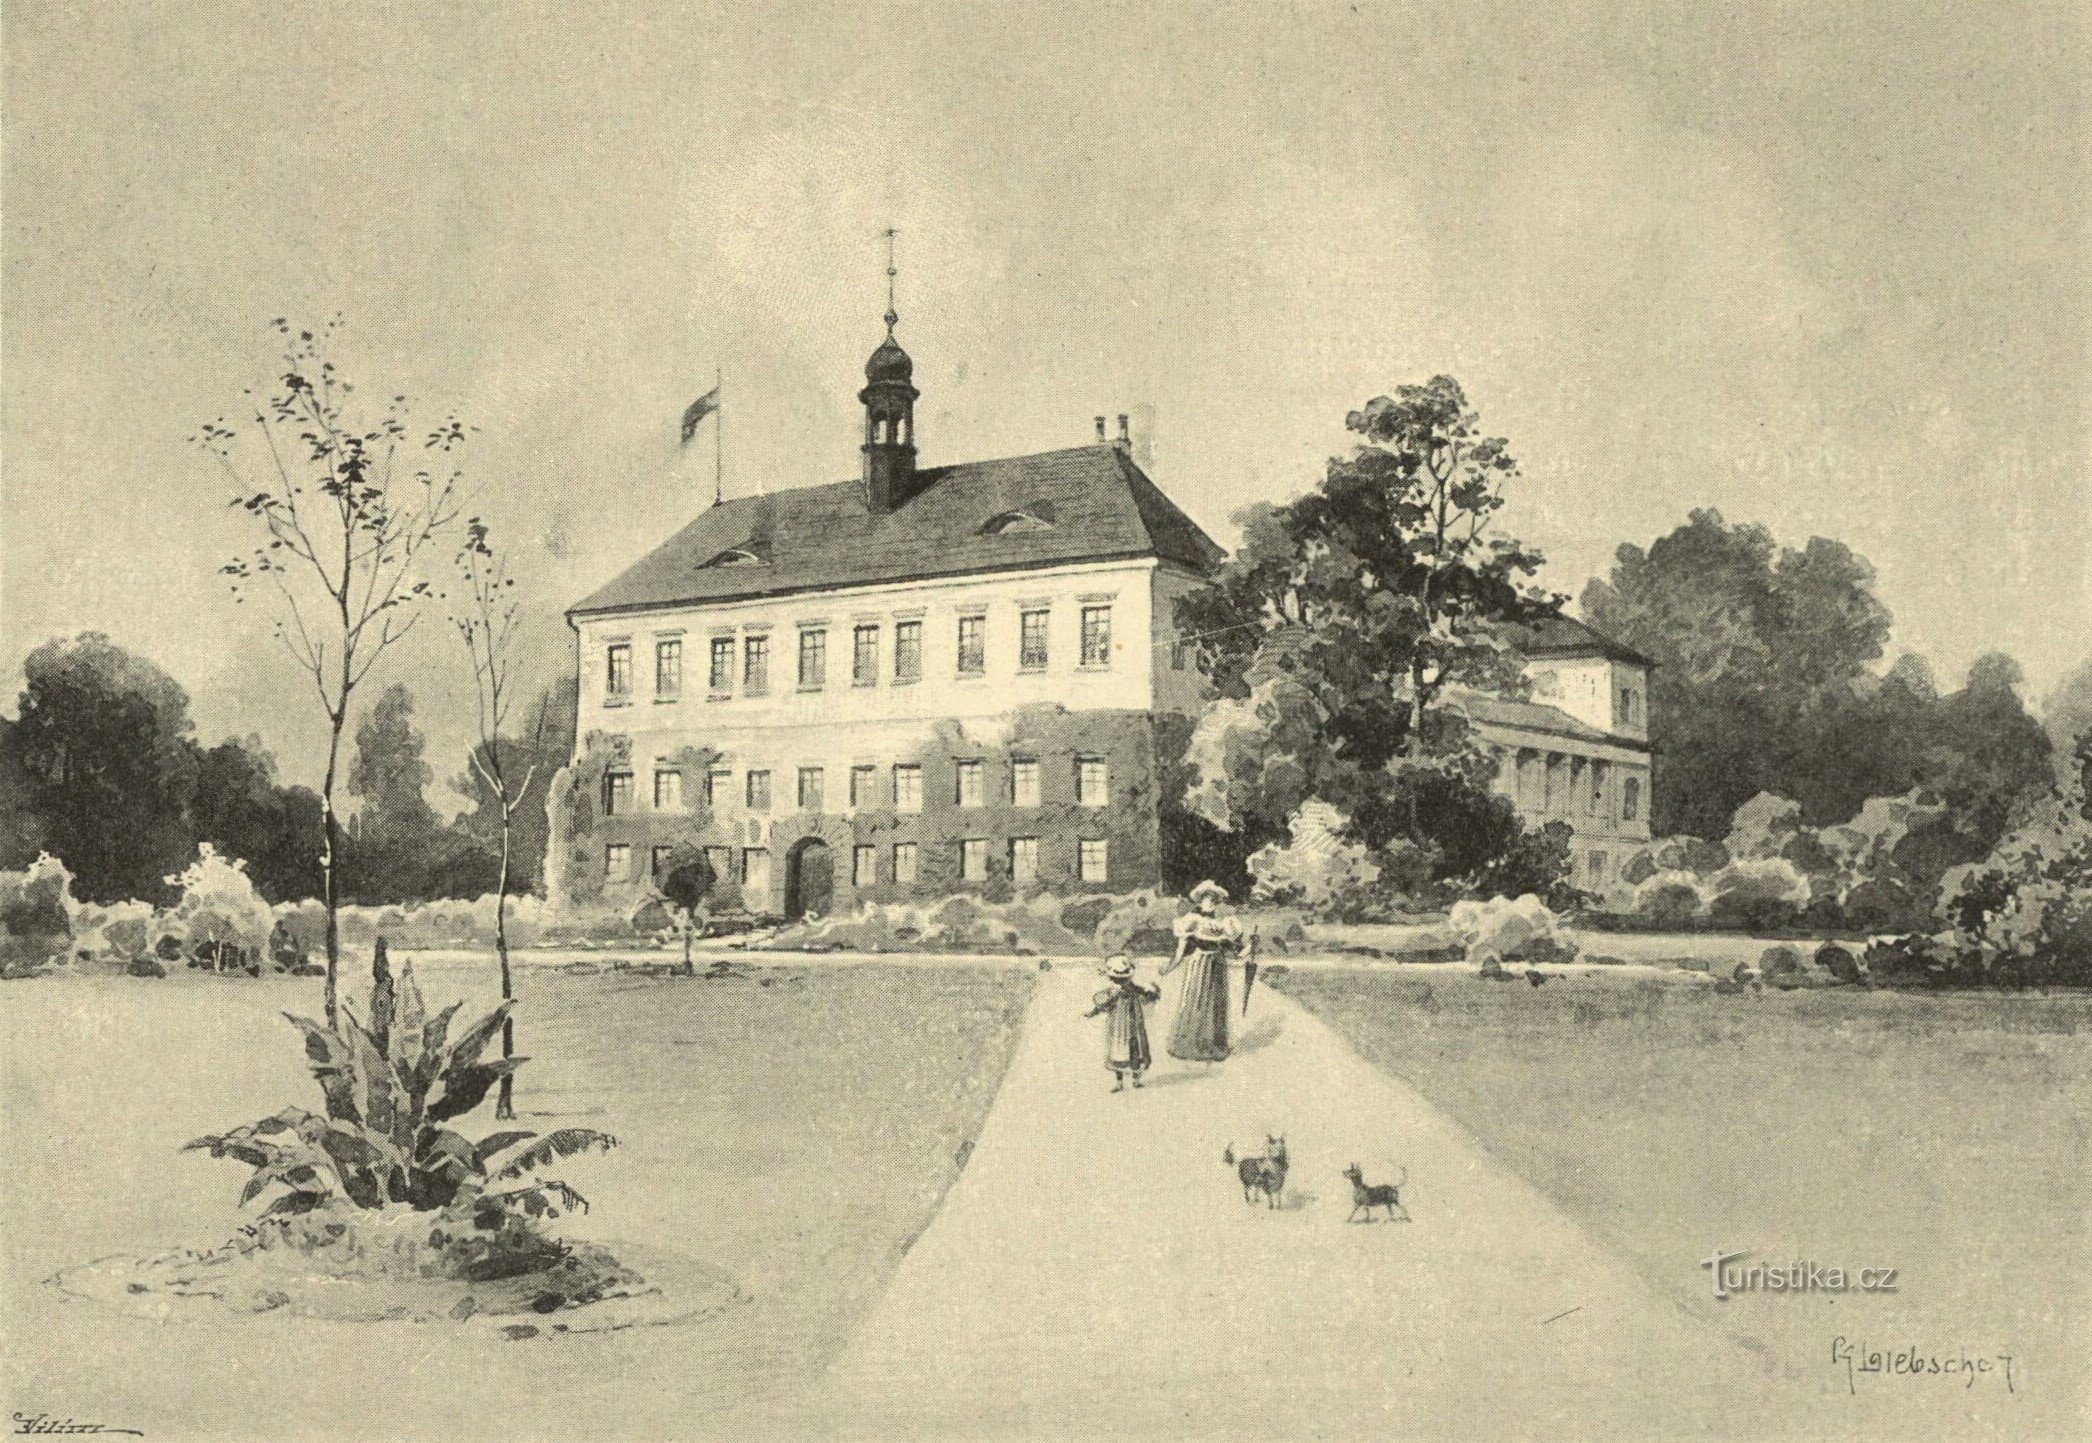 Castello a Kopidlno nella seconda metà del XIX secolo